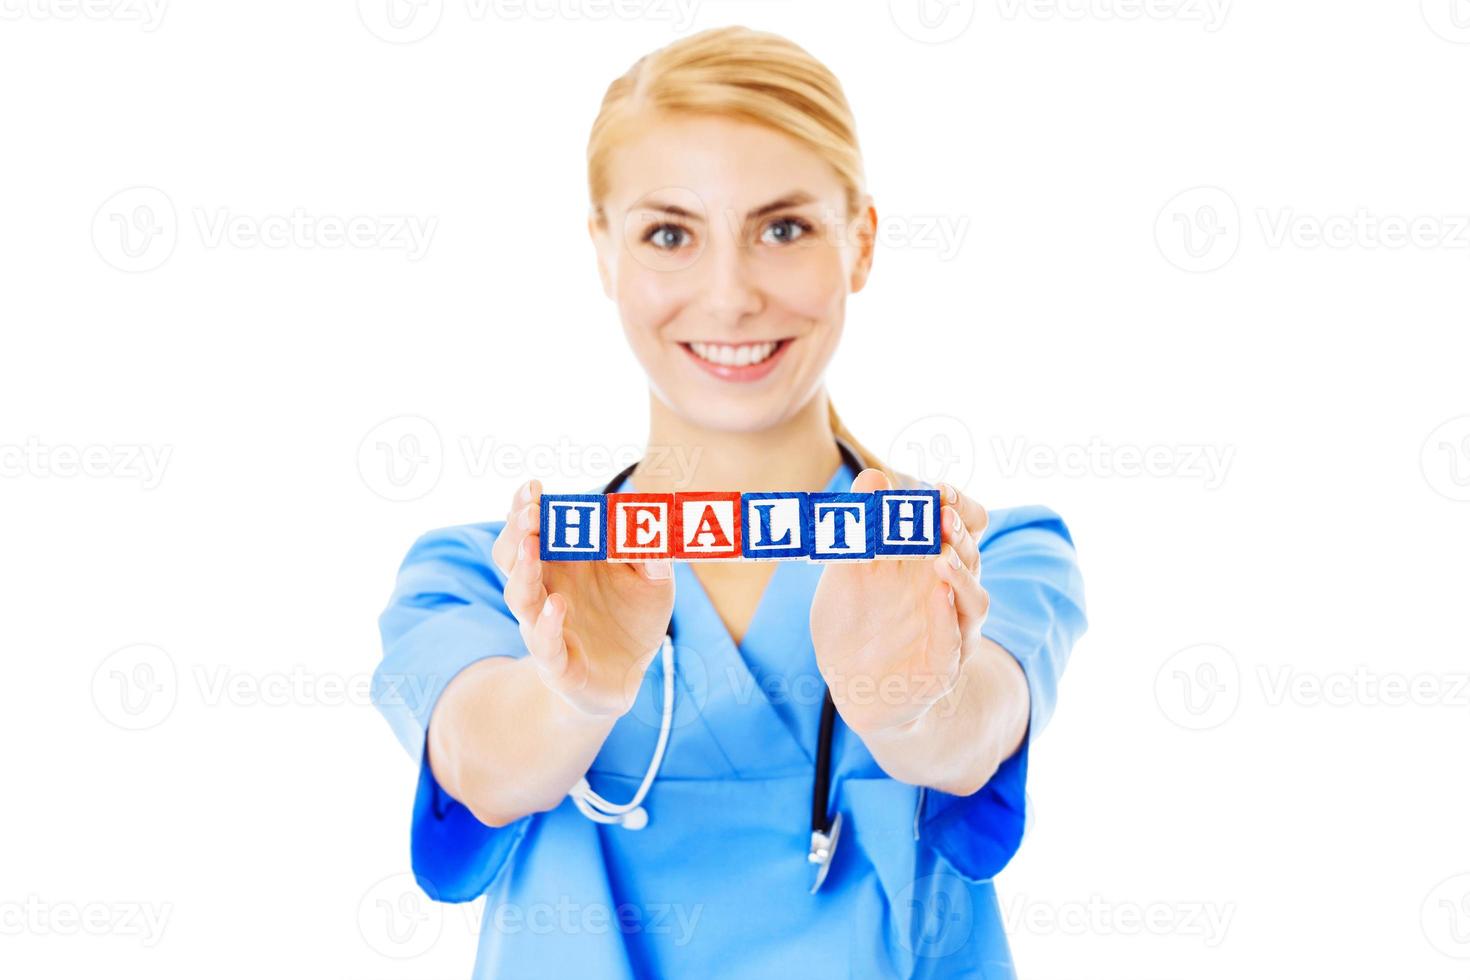 verpleegster Holding blokken spelling uit Gezondheid over- wit achtergrond foto